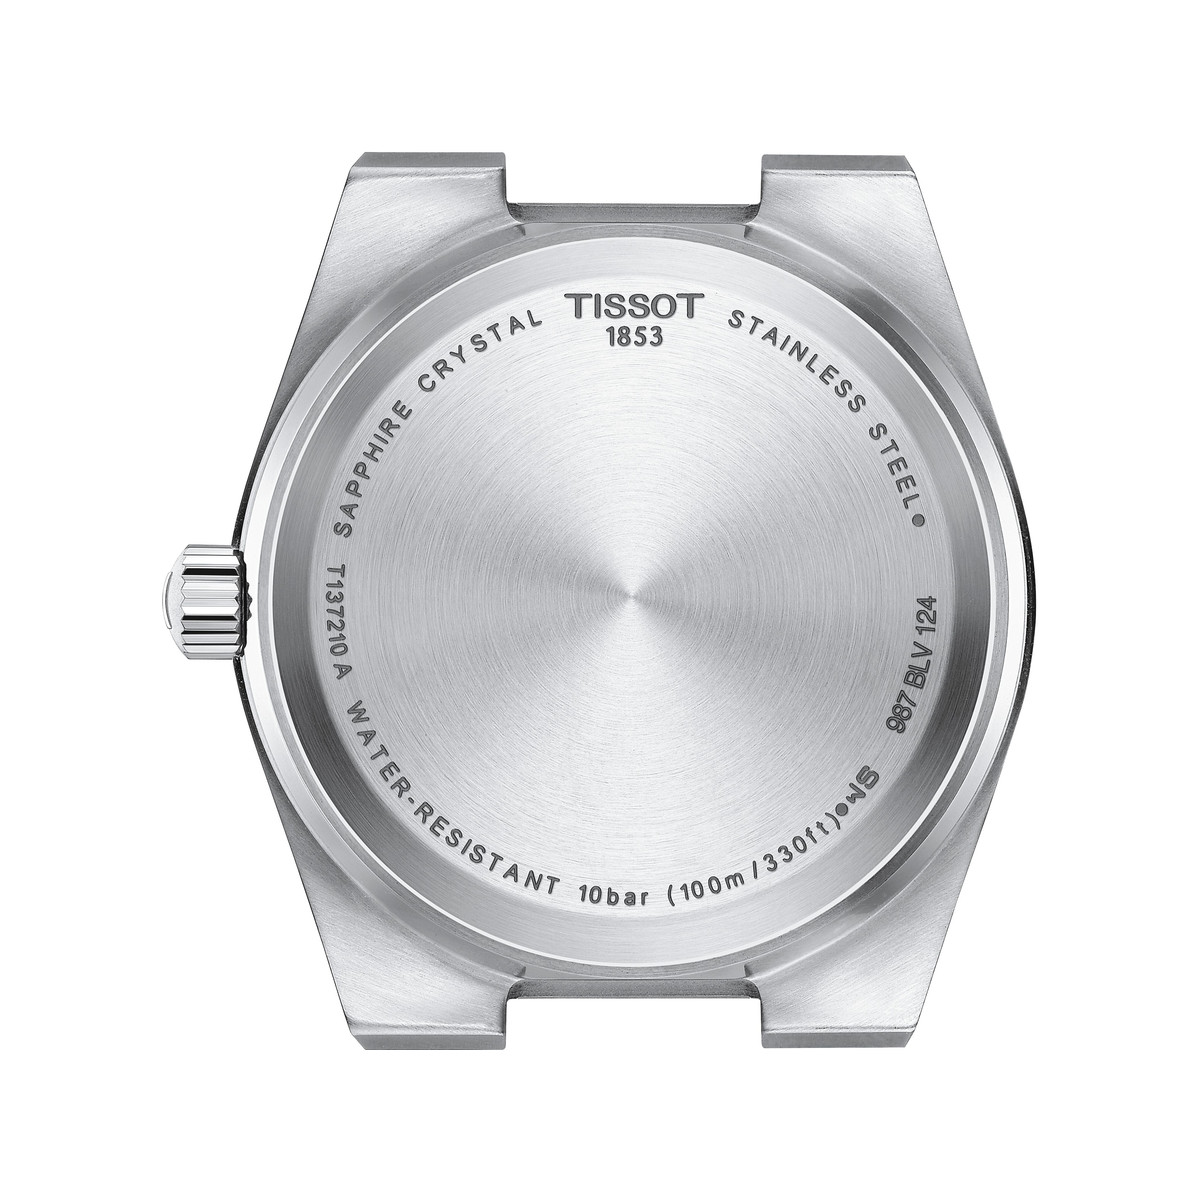 Montre TISSOT T-classic femme bracelet acier inoxydable gris - vue 3